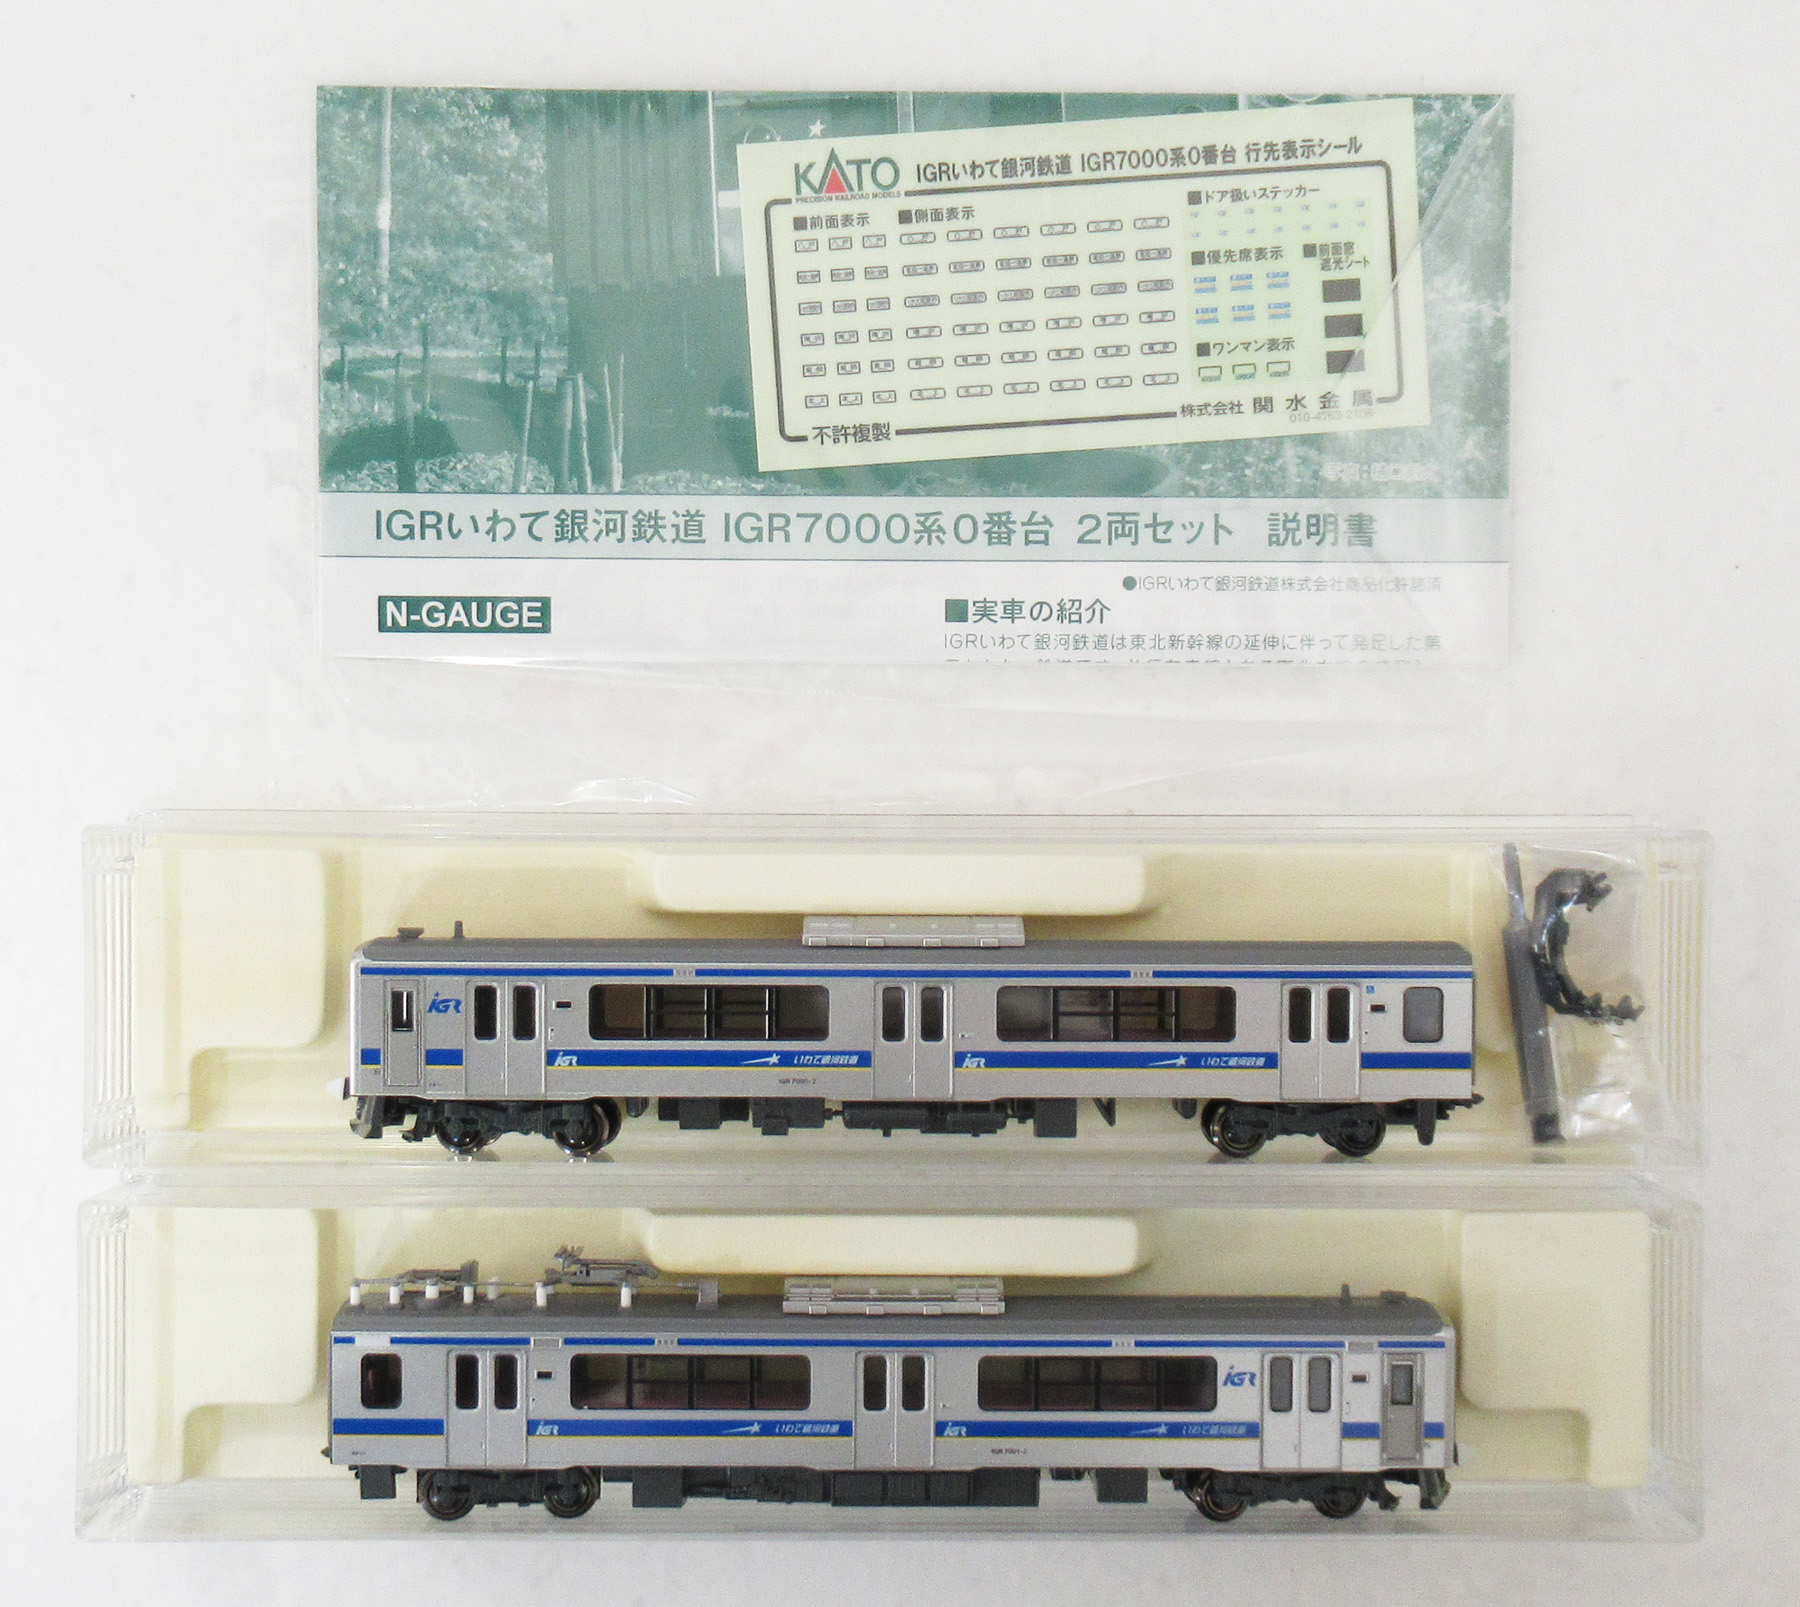 公式]鉄道模型(10-1560IGRいわて銀河鉄道 IGR7000系0番台 2両セット